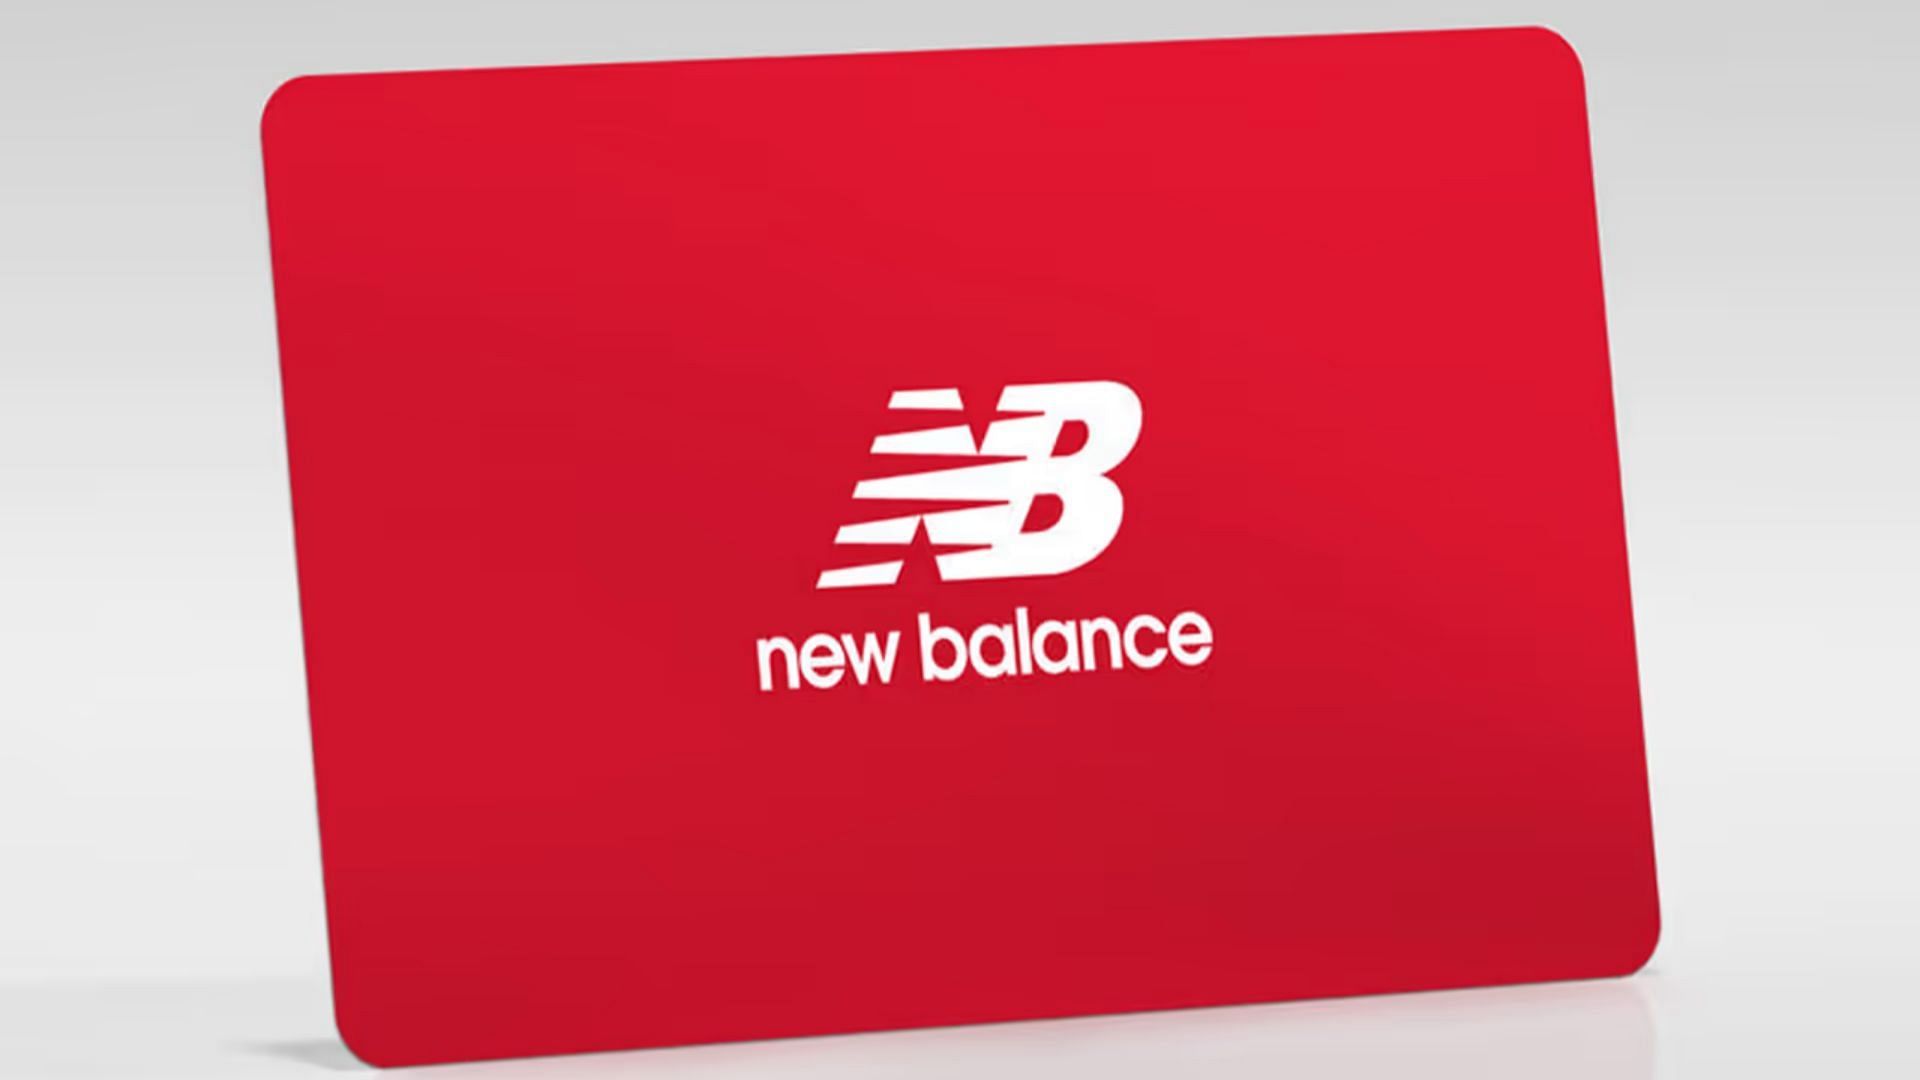 New Balance logo over gift card (Image via New Balance)